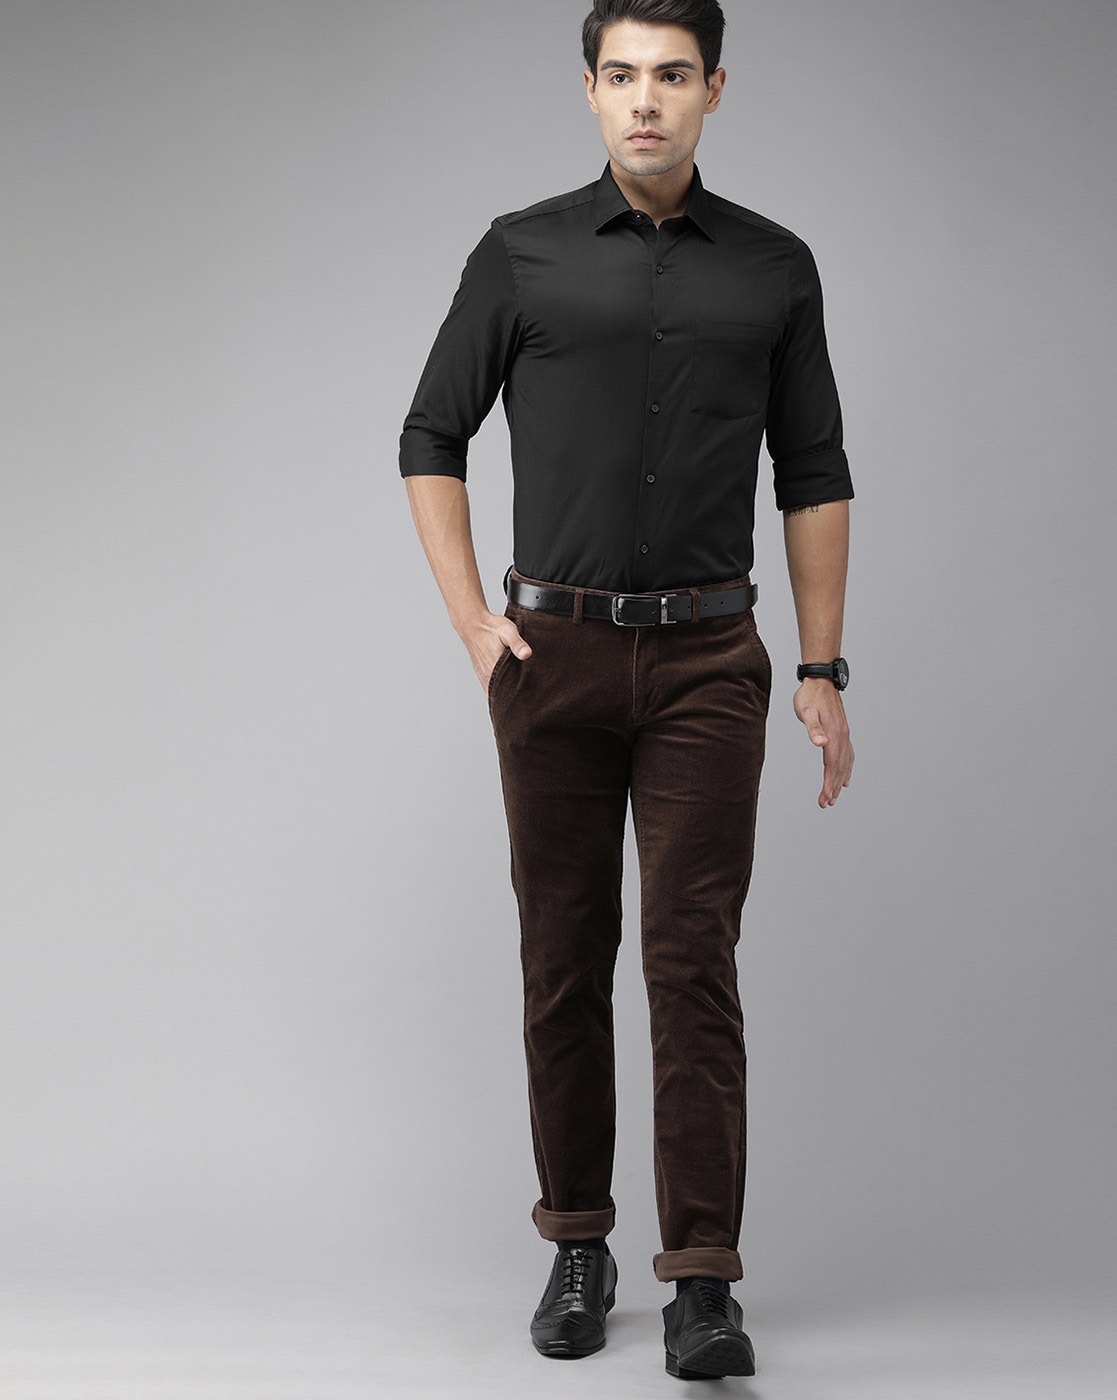 Shop Best Black Cotton Casual Shirt for Men – IndusRobe